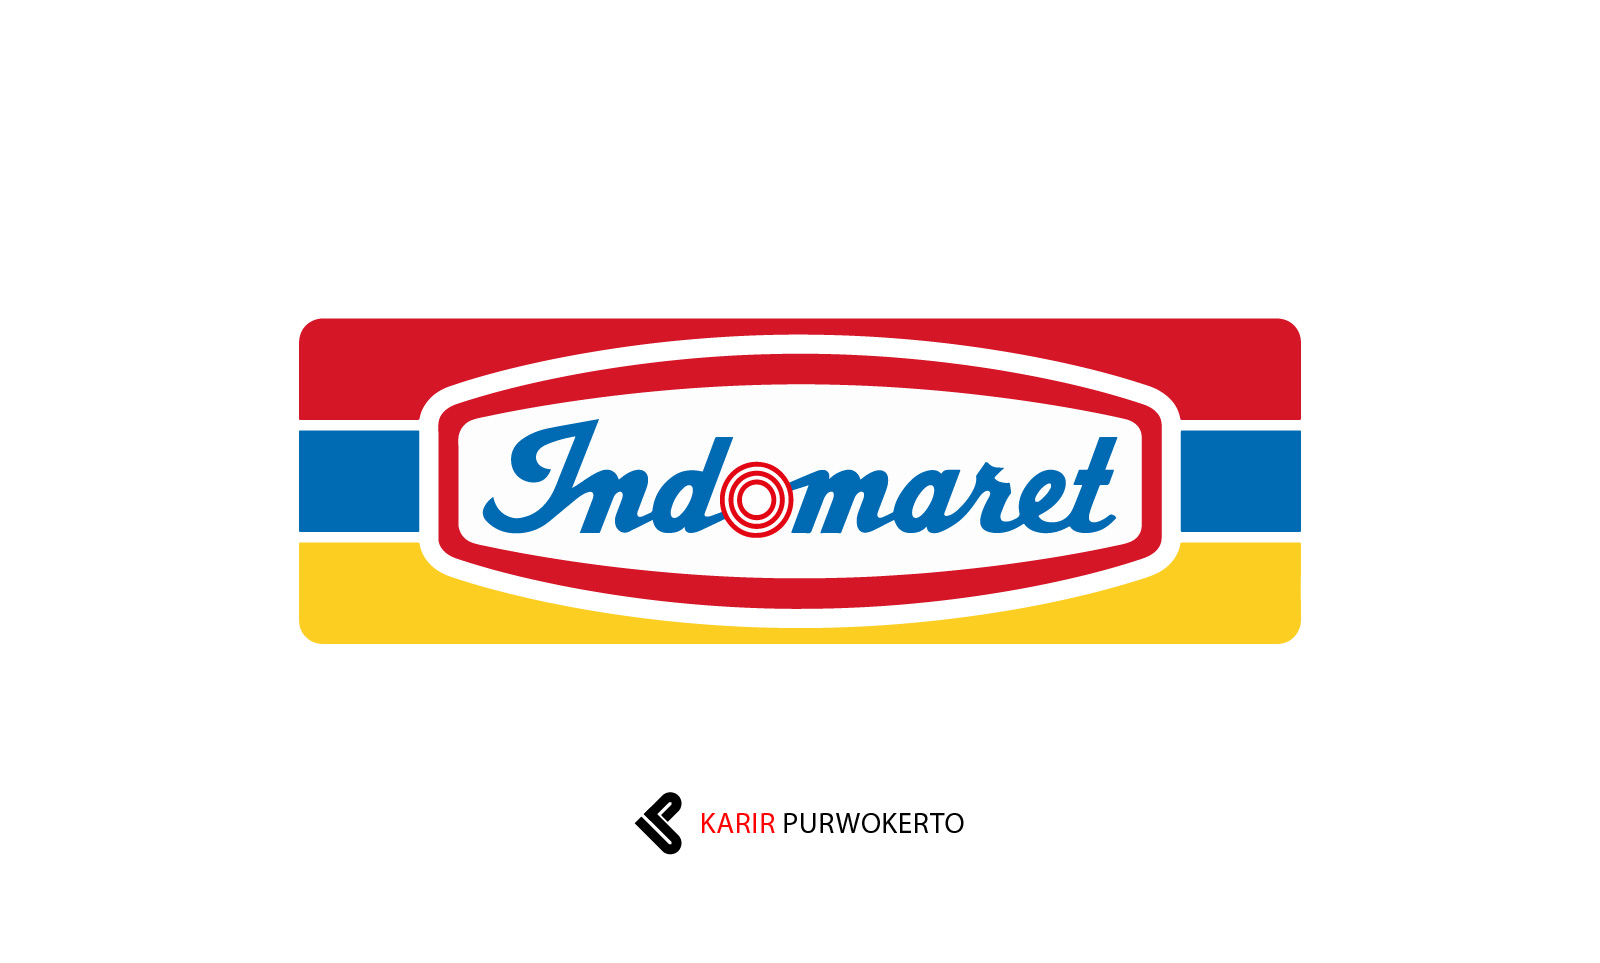 Lowongan Kerja PT Indomarco Prismatama (Indomaret)